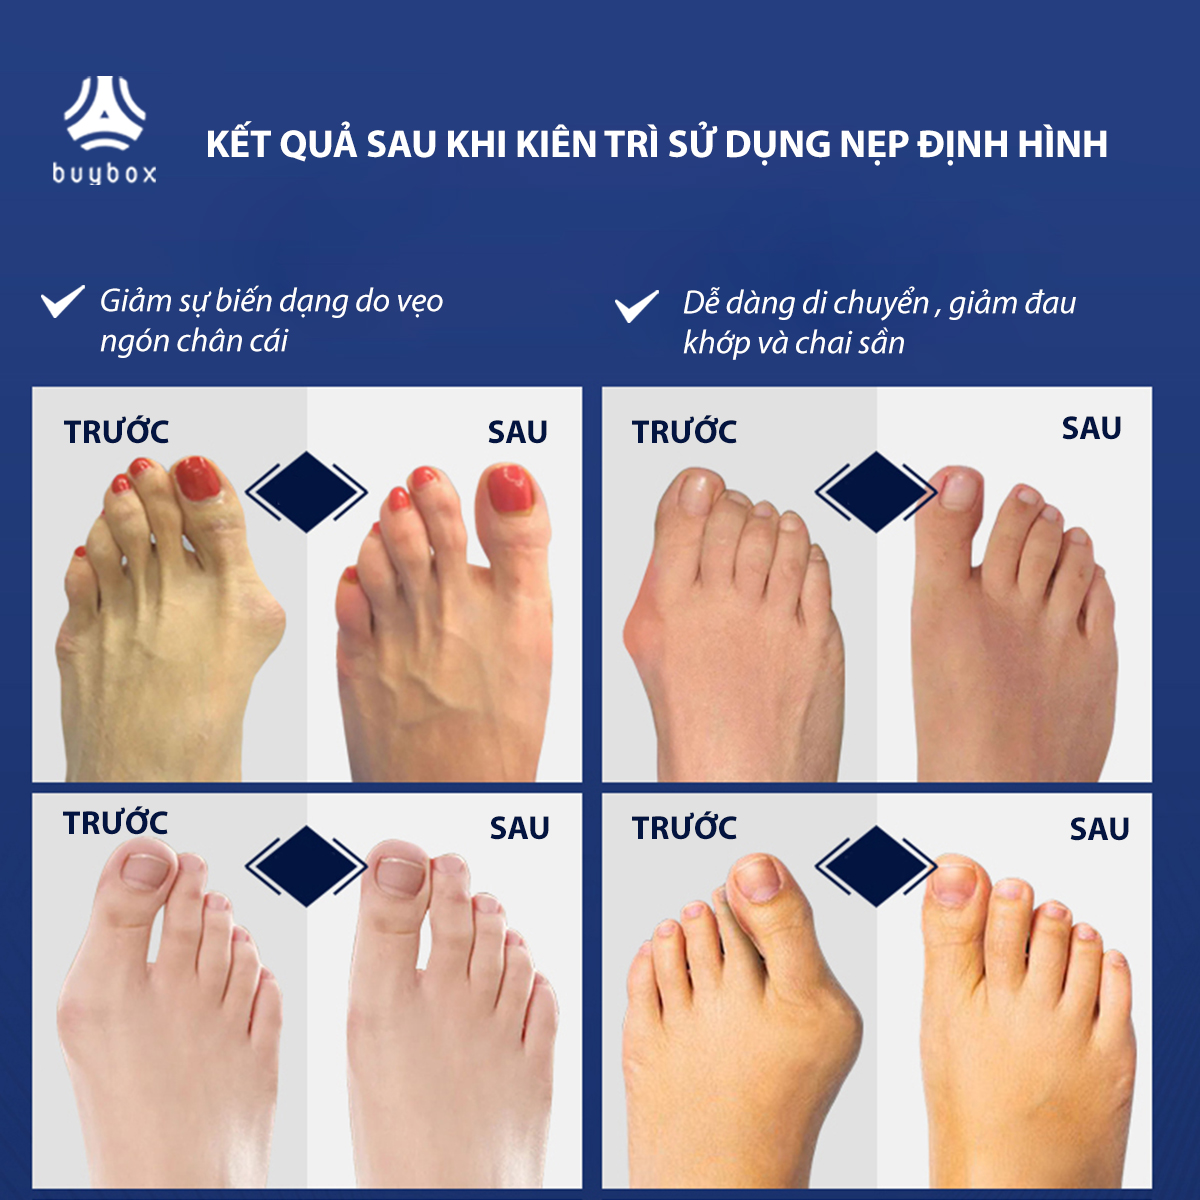 Combo 2 cặp dụng cụ chỉnh hình, bảo vệ ngón chân cái bị vẹo chất liệu nhựa PC và silicone - Buybox